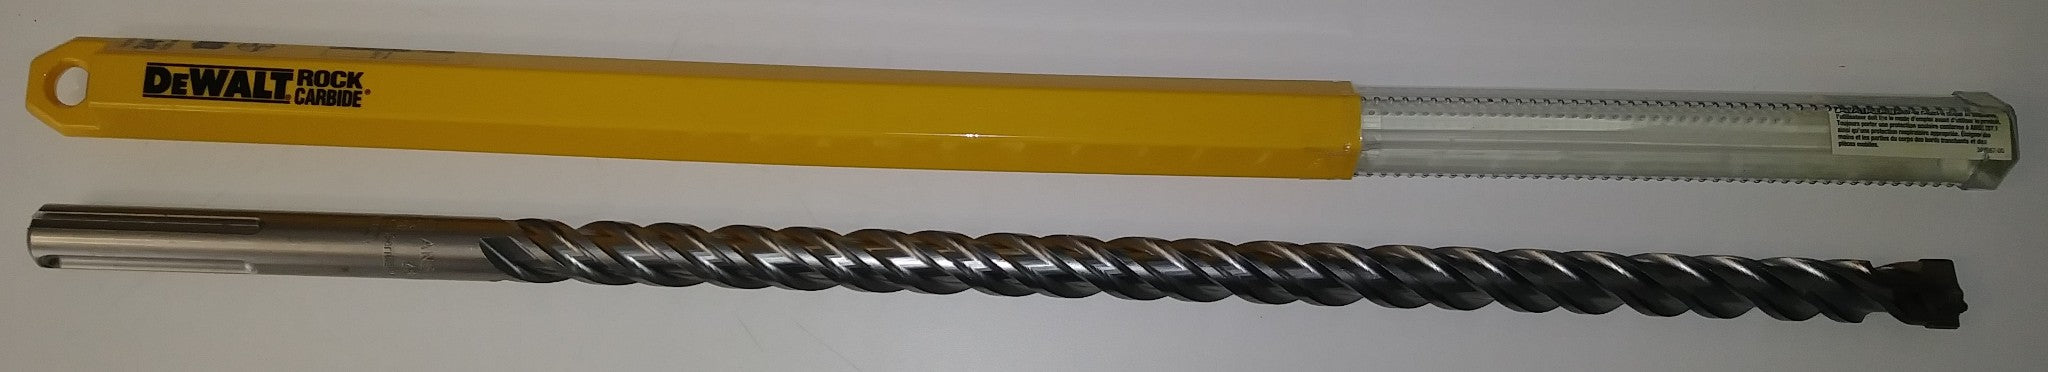 Dewalt DW5812 3/4" x 16" x 21-1/2" SDS Max 4 Cutter Rotary Hammer Drill Bit